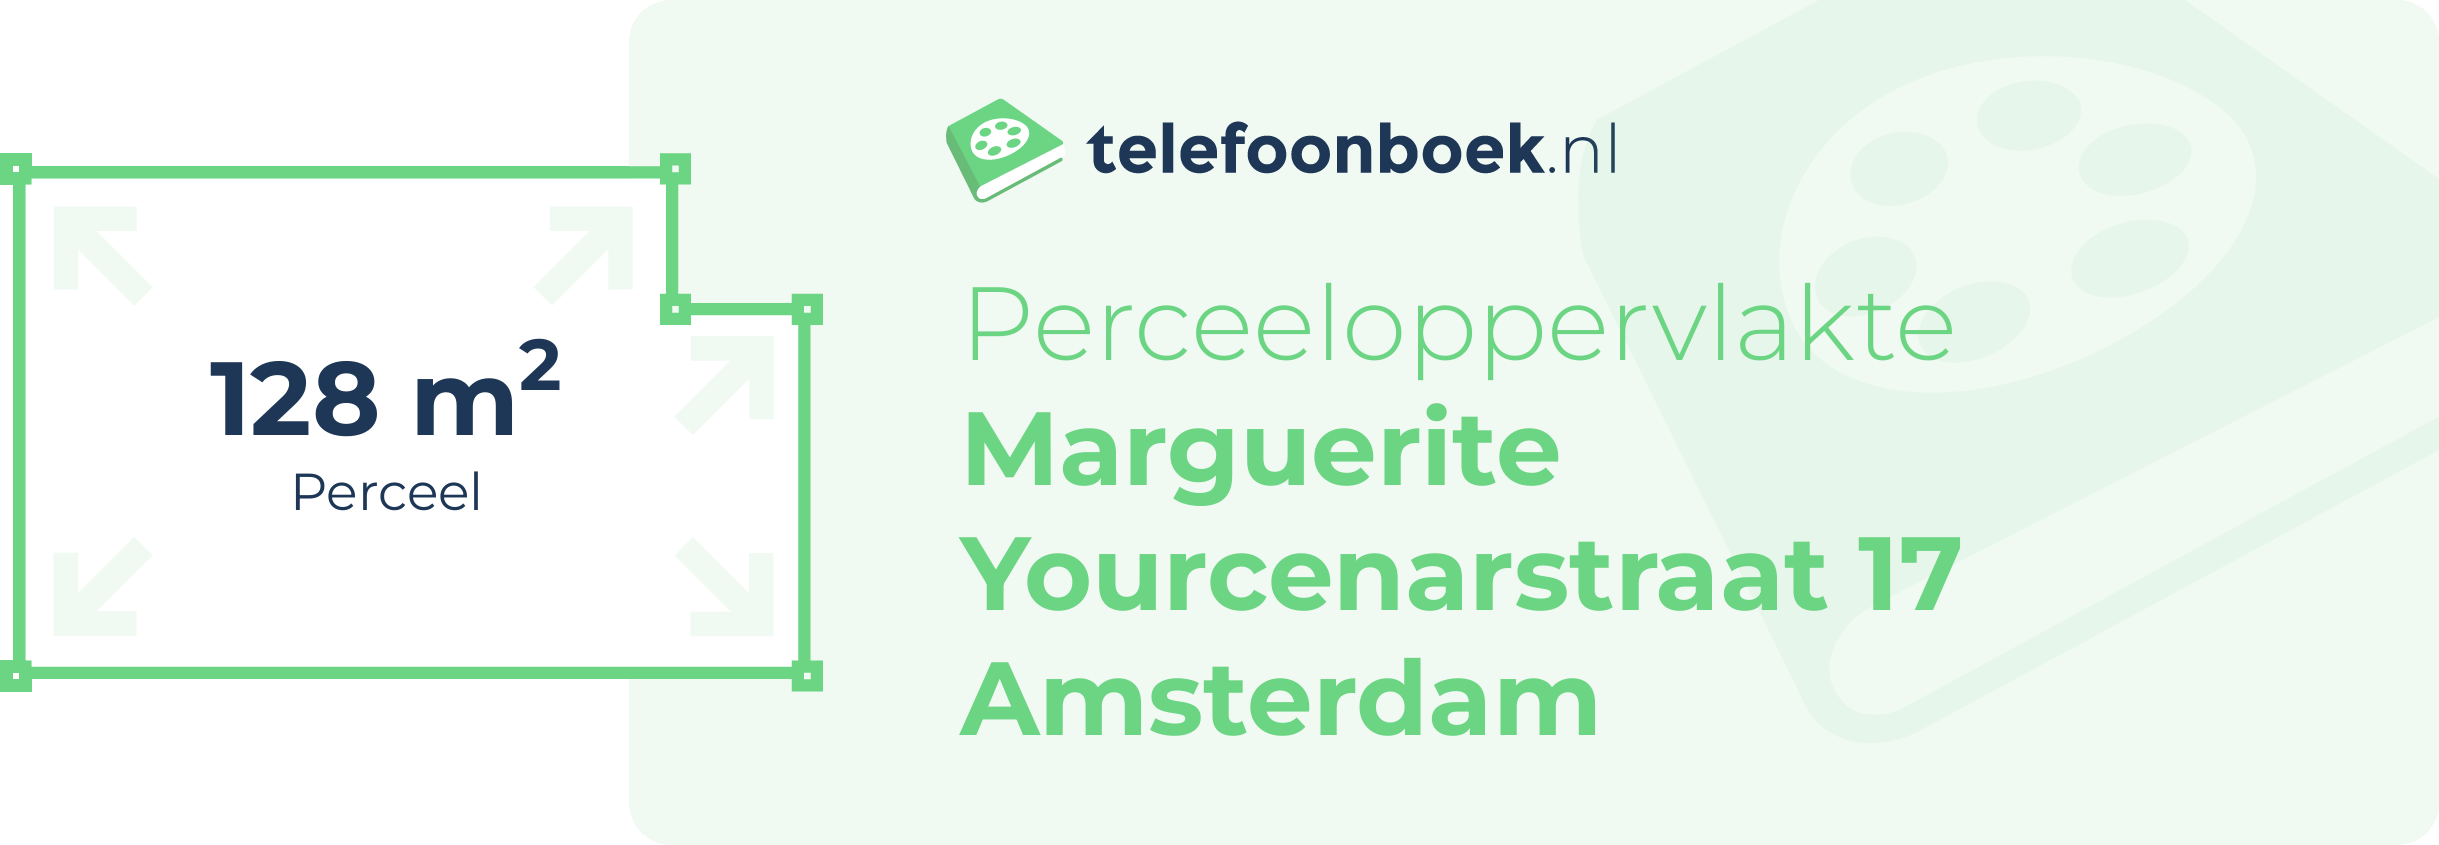 Perceeloppervlakte Marguerite Yourcenarstraat 17 Amsterdam